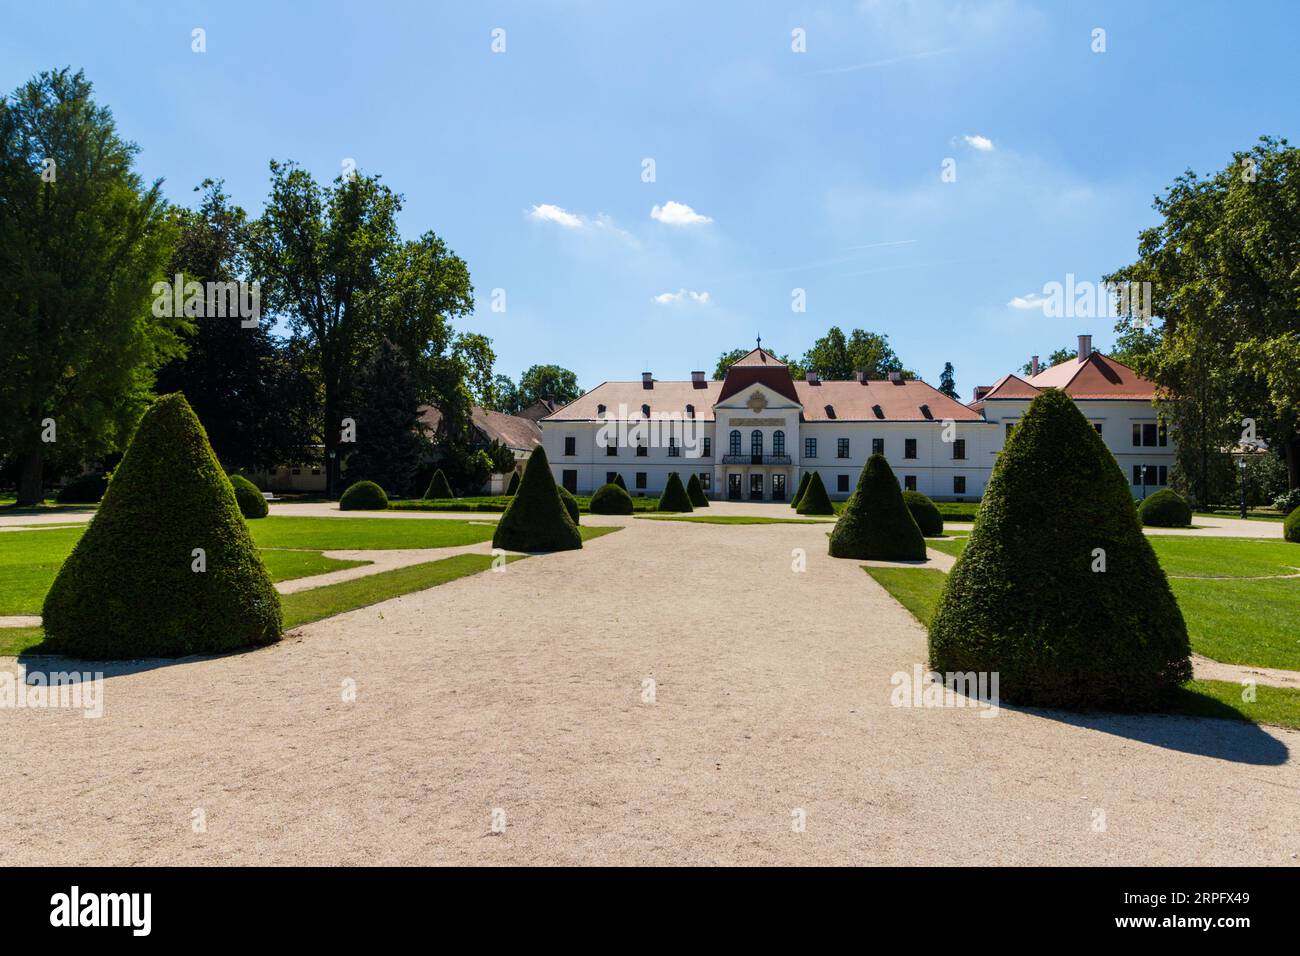 Façade nord et jardin à la française du palais ou manoir Szechenyi, construit en 1750 dans le style baroque, Nagycenk, Hongrie Banque D'Images